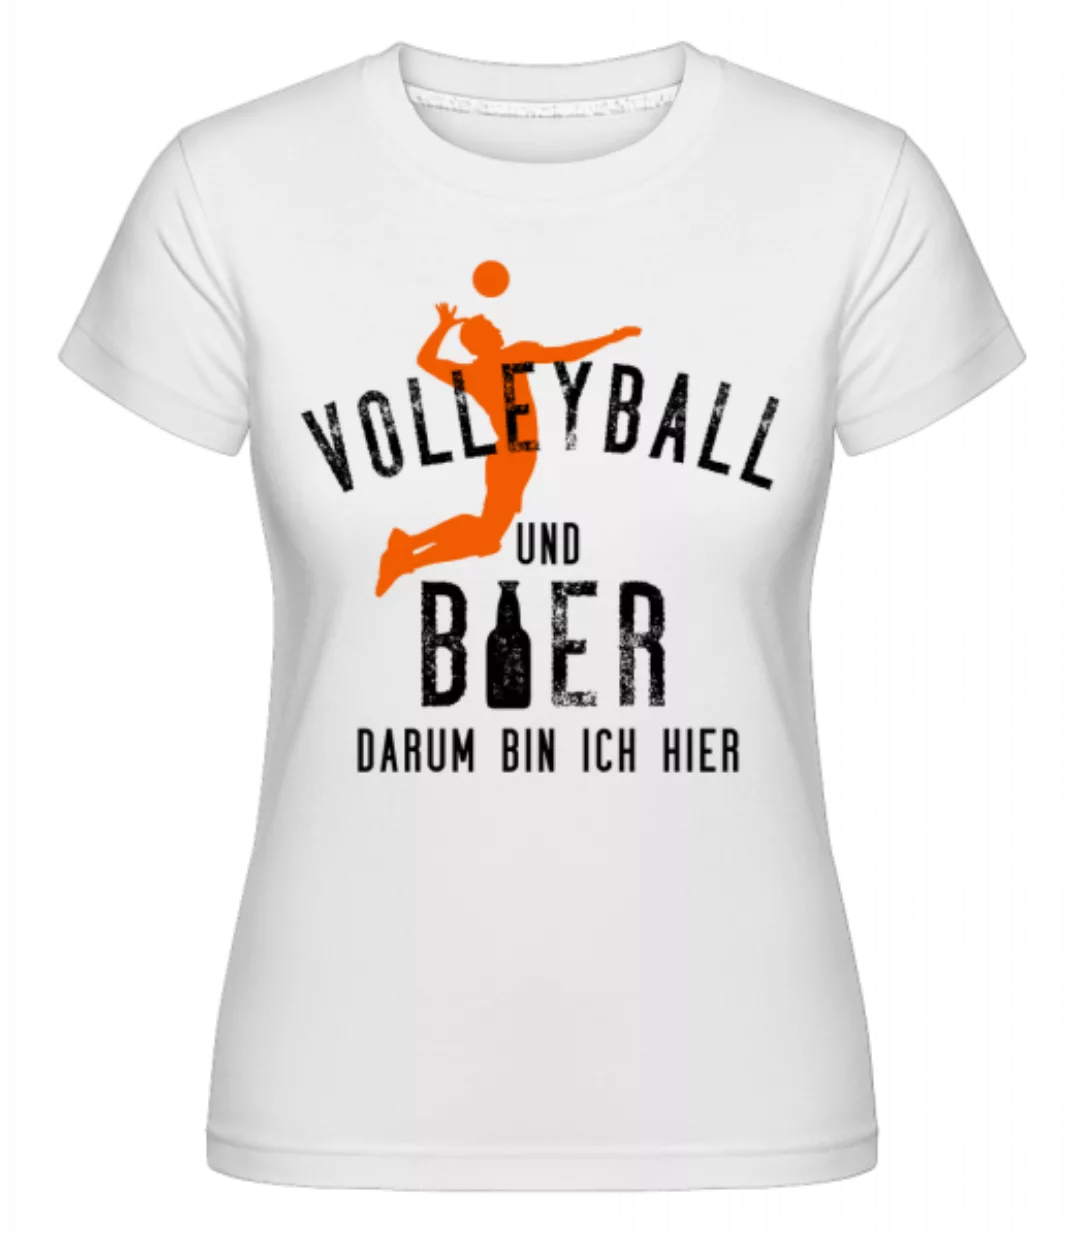 Volleyball Und Bier · Shirtinator Frauen T-Shirt günstig online kaufen